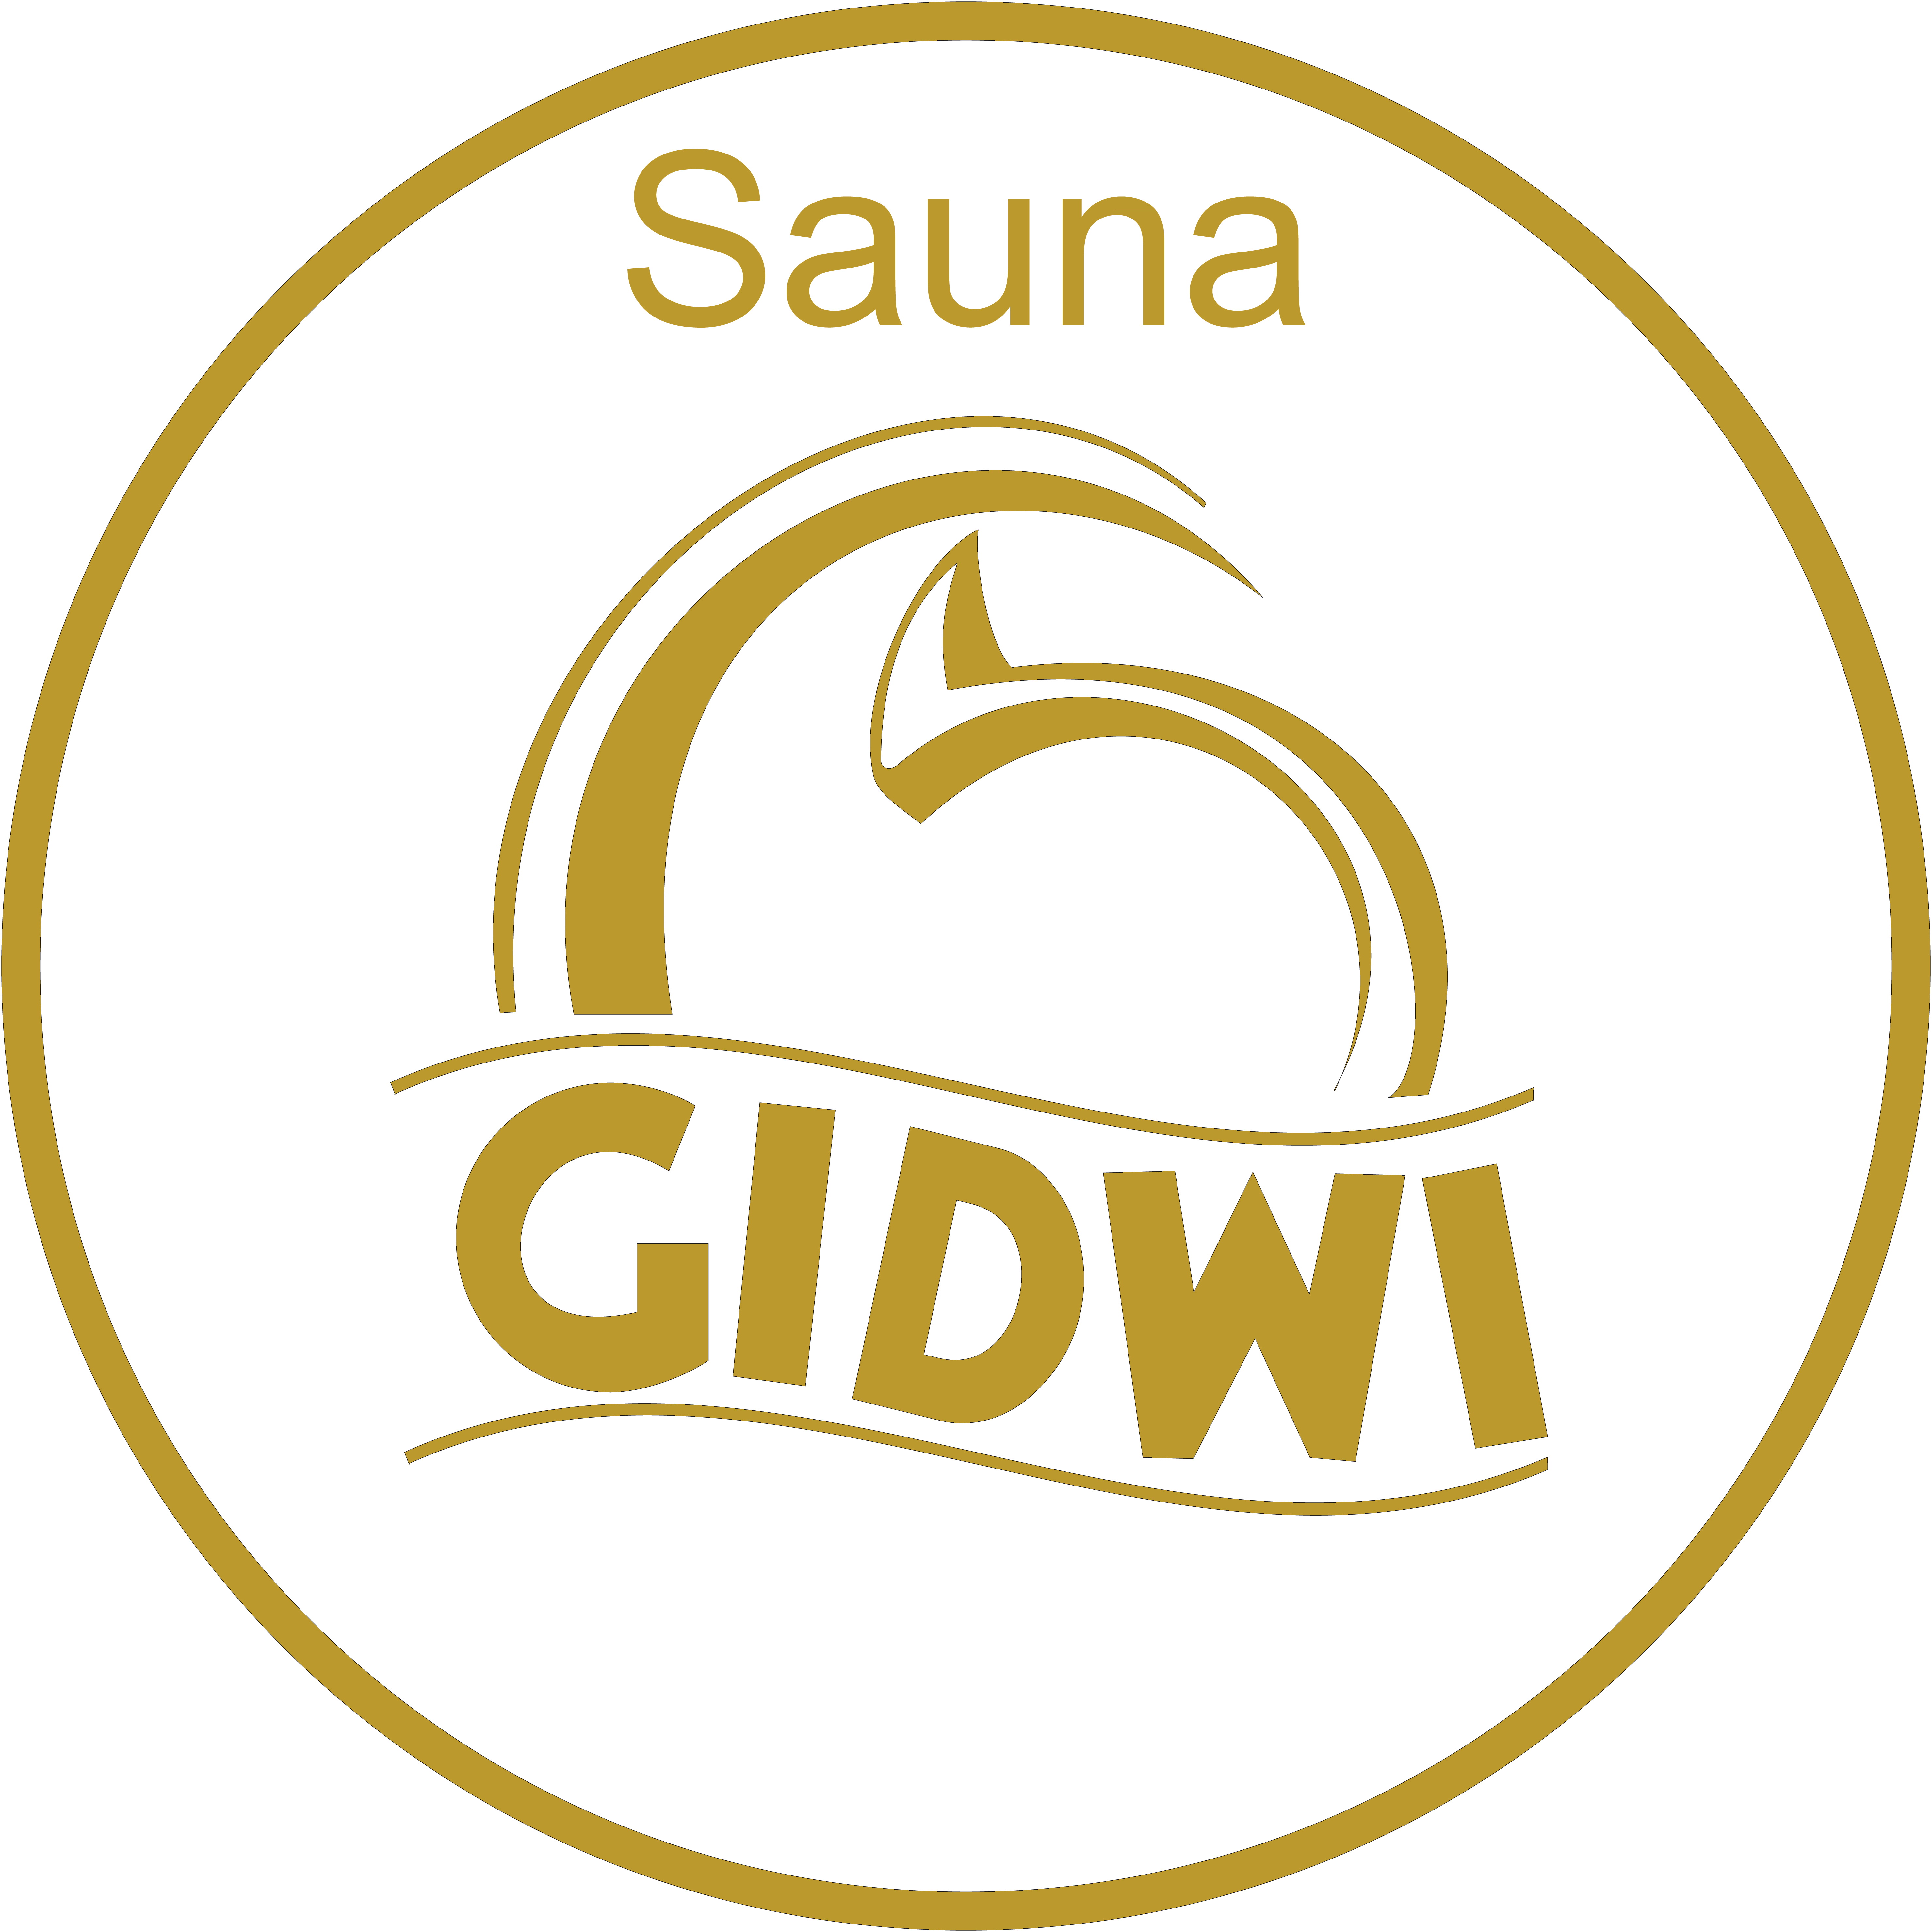 Sauna Gidwi